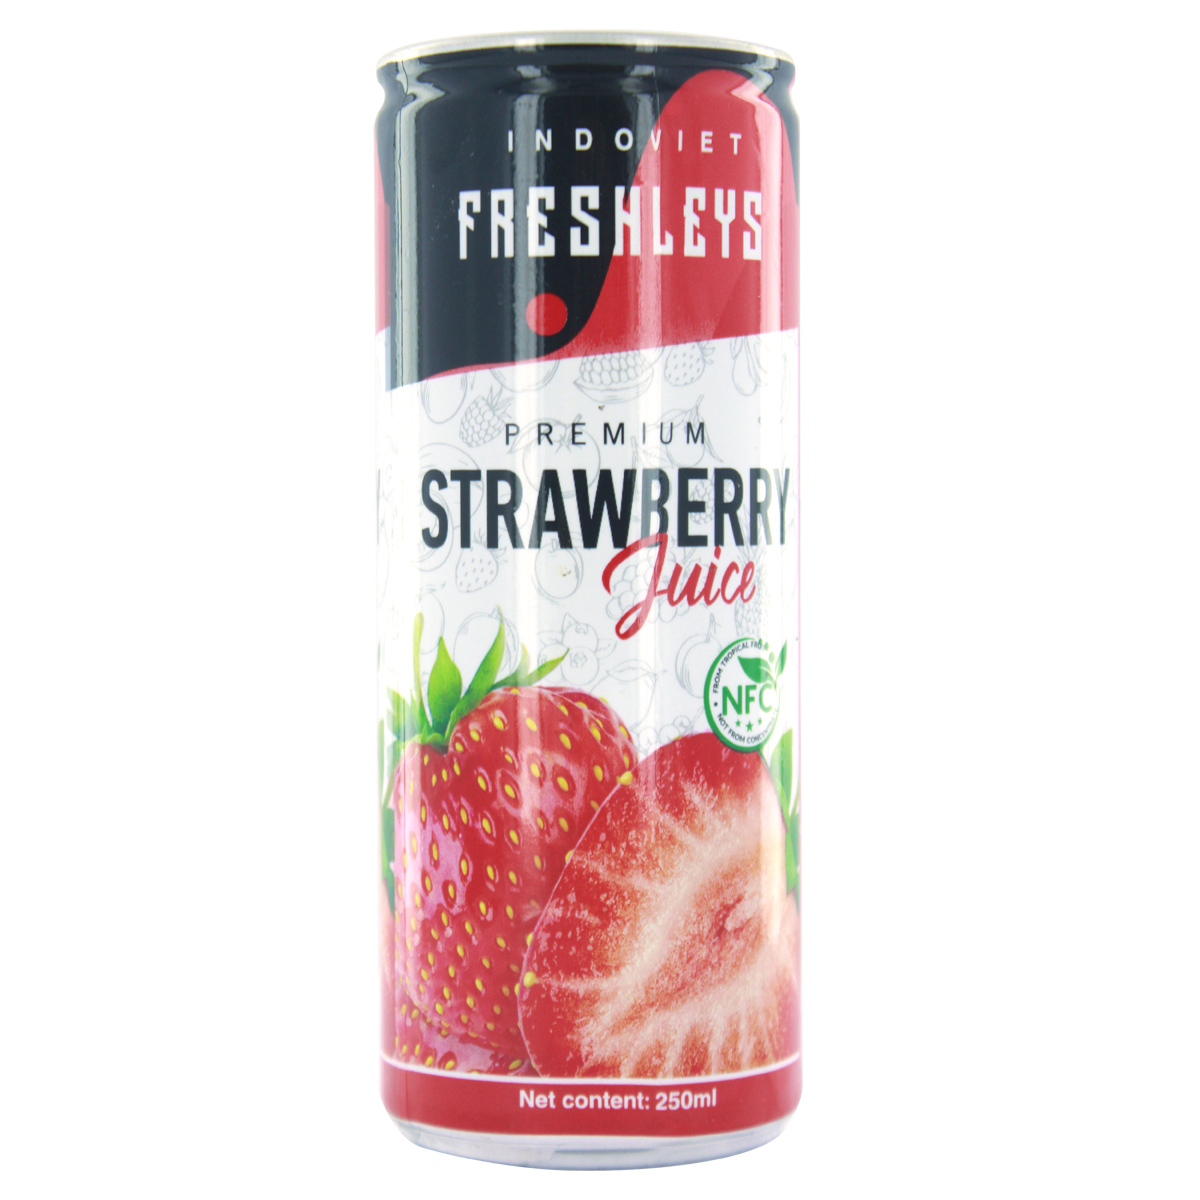 Freshleys Strawberry Fruit Juice 250ml